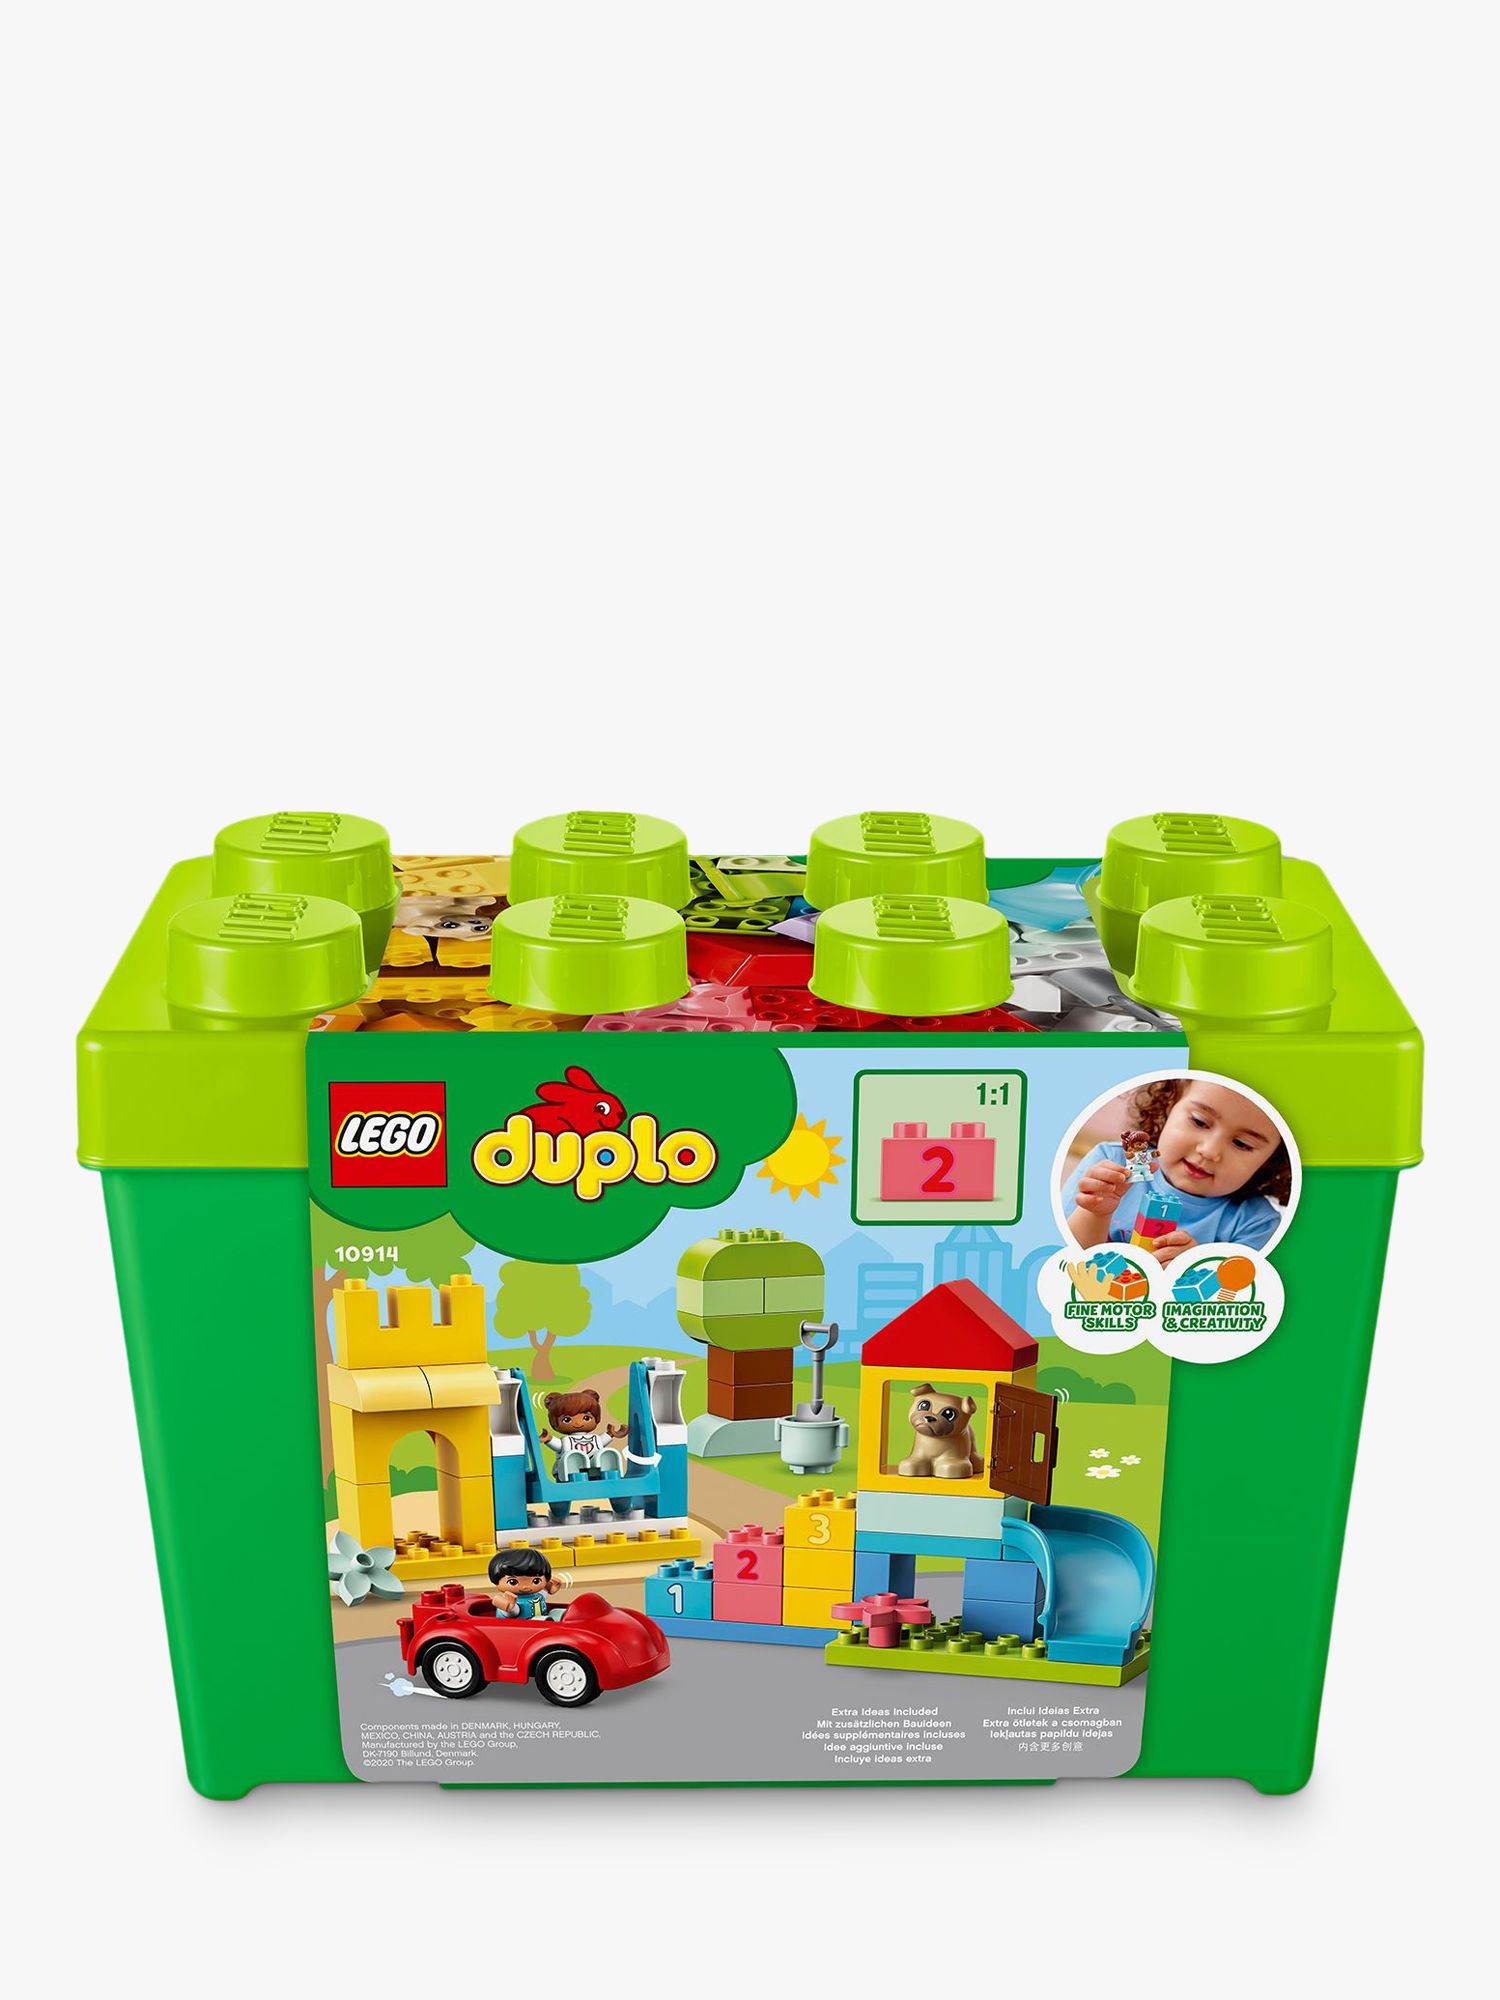 John Lewis Exclusive Play-Doh Create N' Store Big Bucket Storage Set